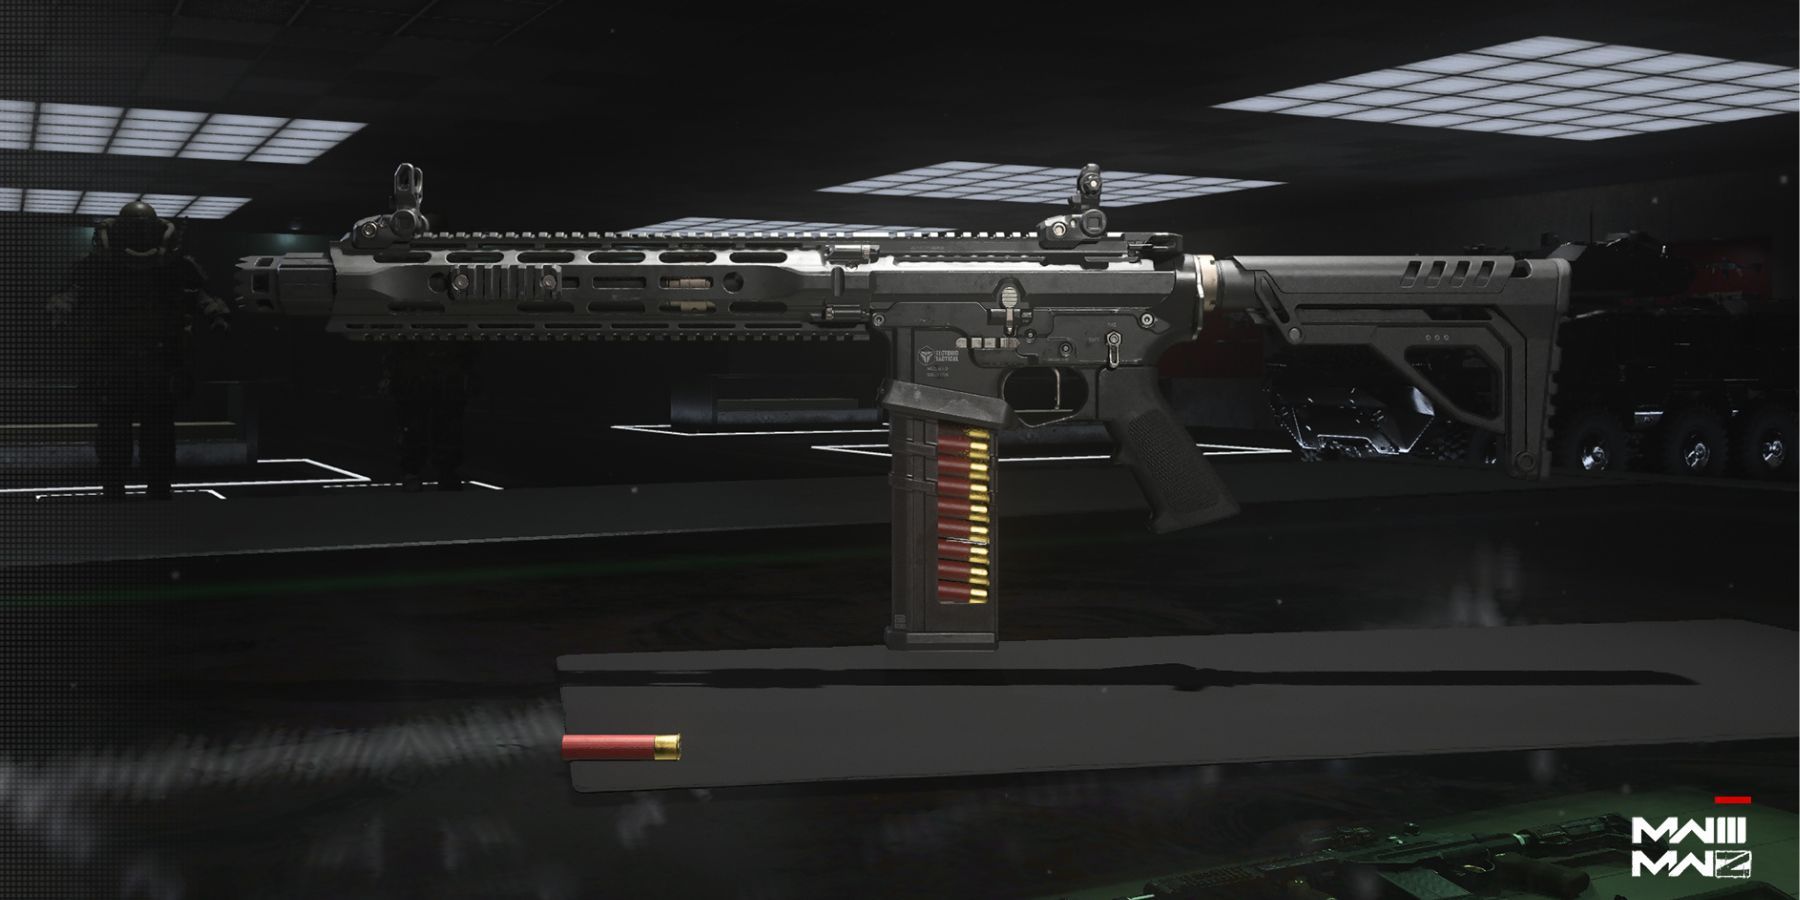 the new modern warfare 3 shotgun called riverter.